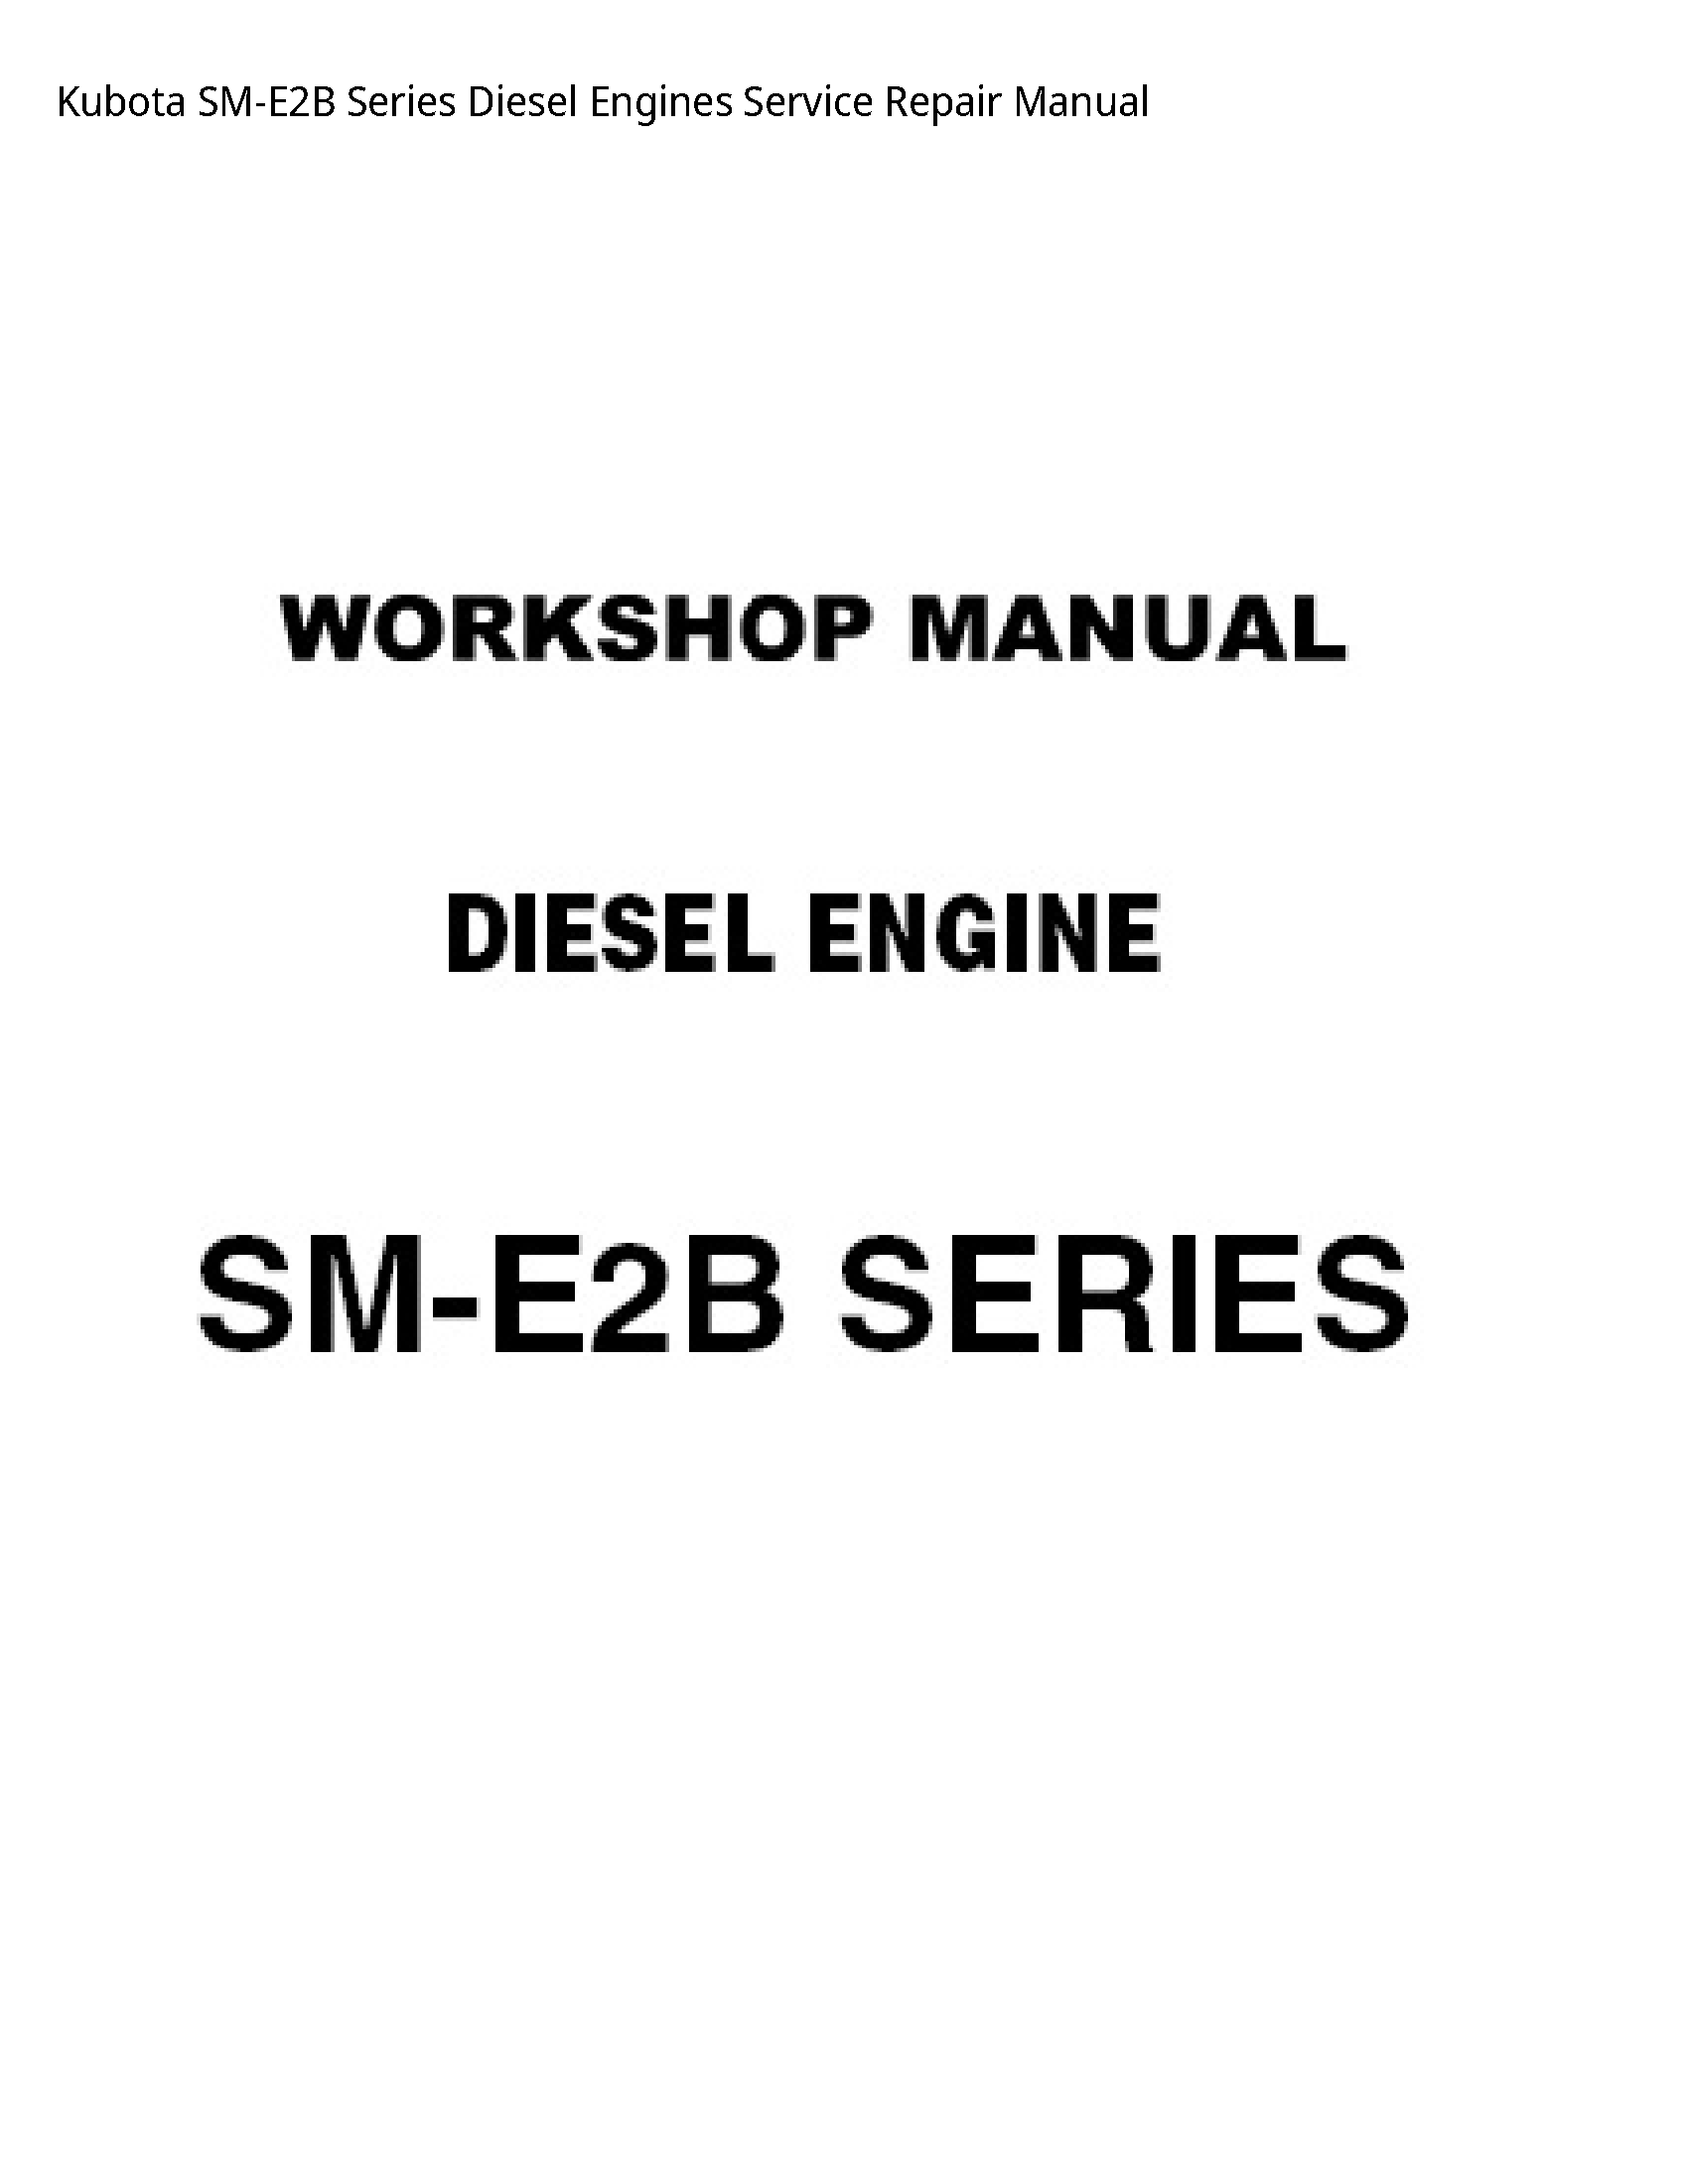 Kubota SM-E2B Series Diesel Engines Service Repair Manual